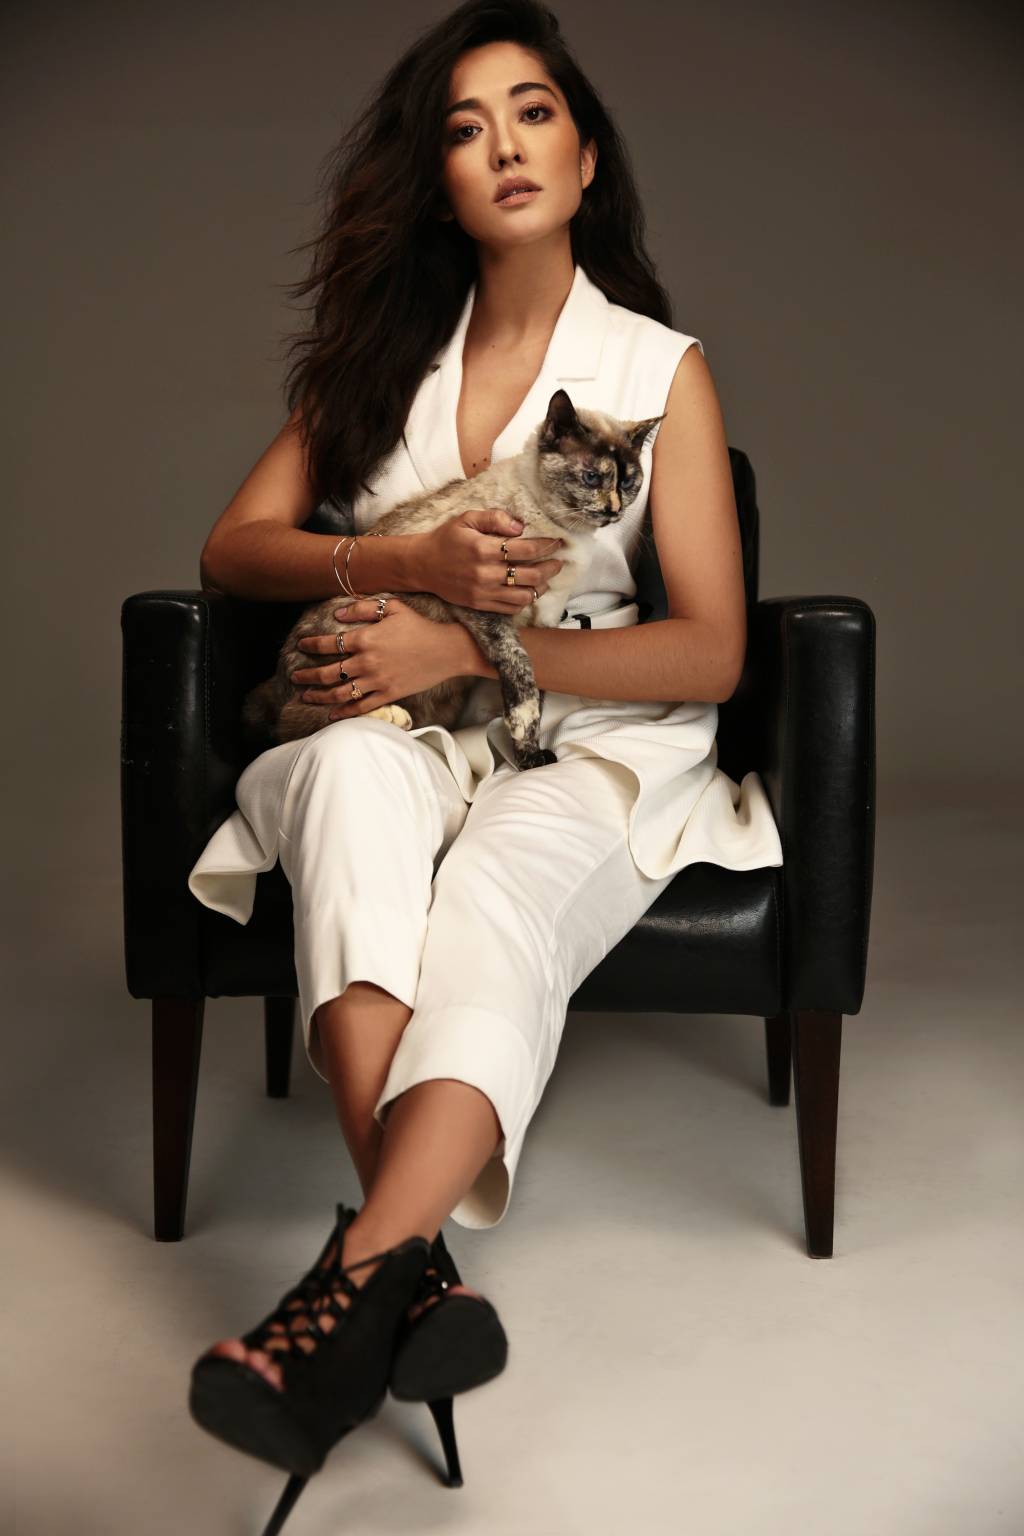 Jacqueline Sato posa com gato no colo enquanto está sentada em uma poltrona preta. Ela veste roupa toda branca e salto alto preto. Encara a câmera com olhar sério.